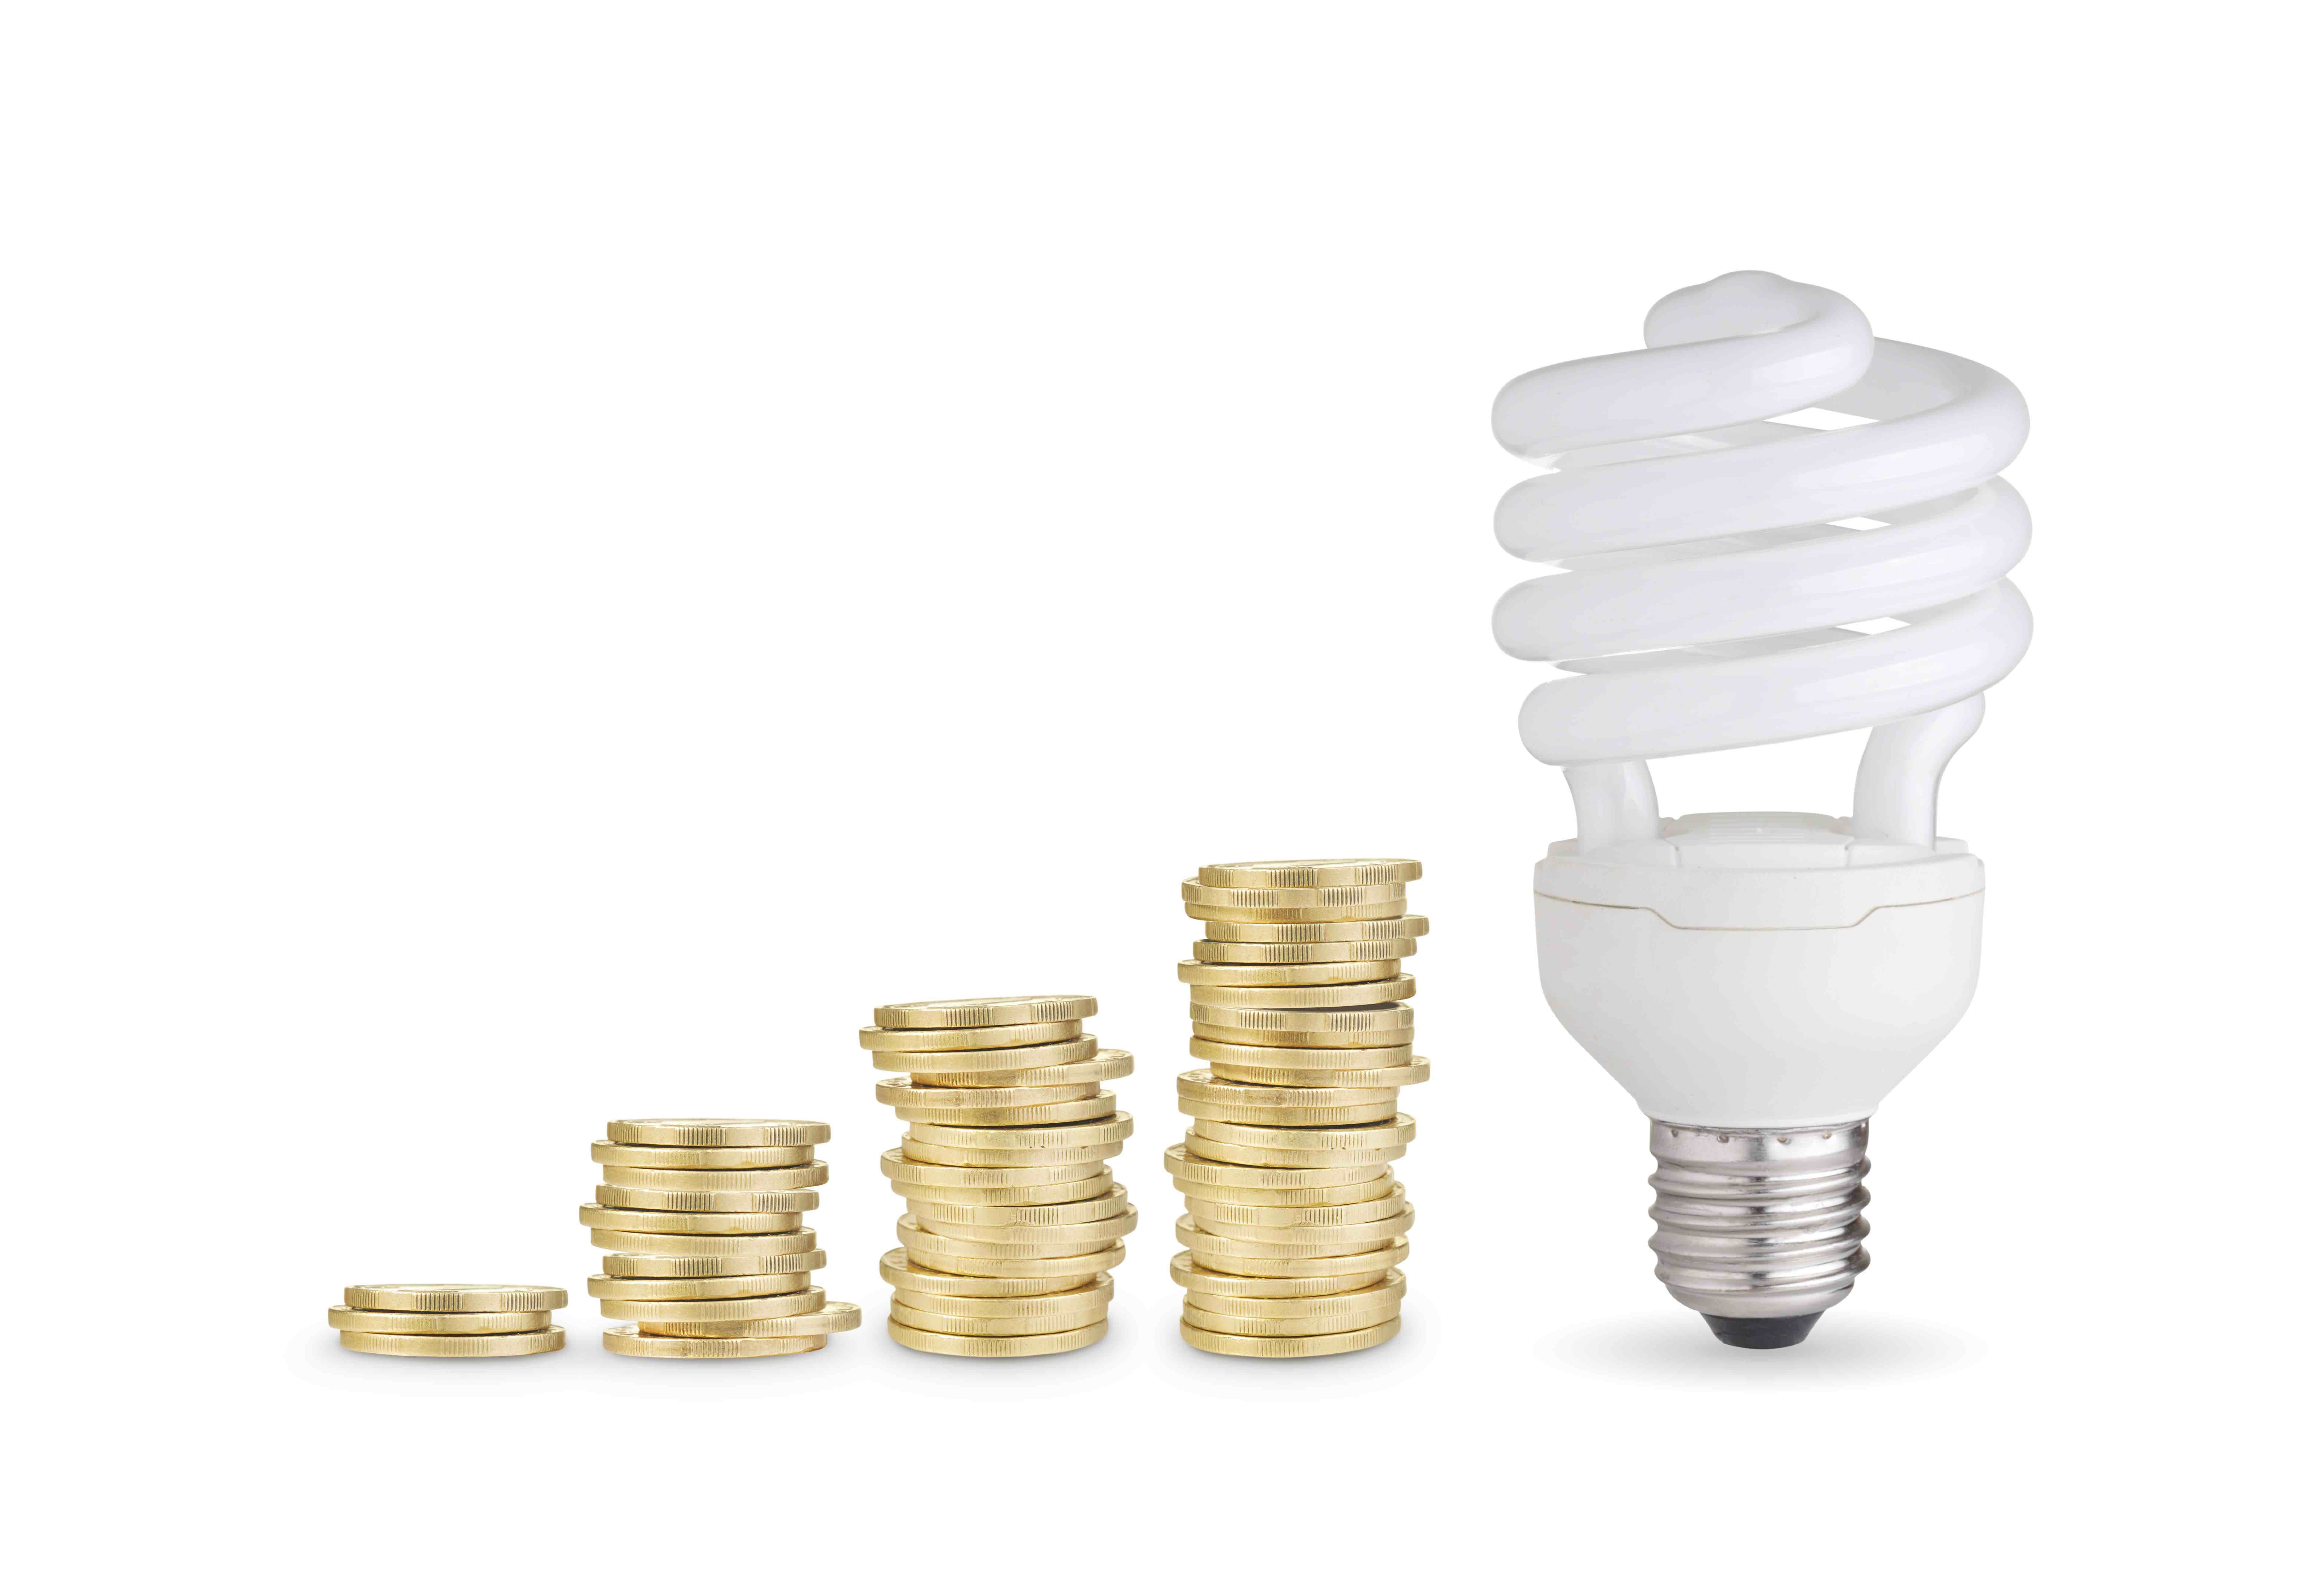 Coins And Energy Saver Bulb 2021 08 26 15 27 44 Utc